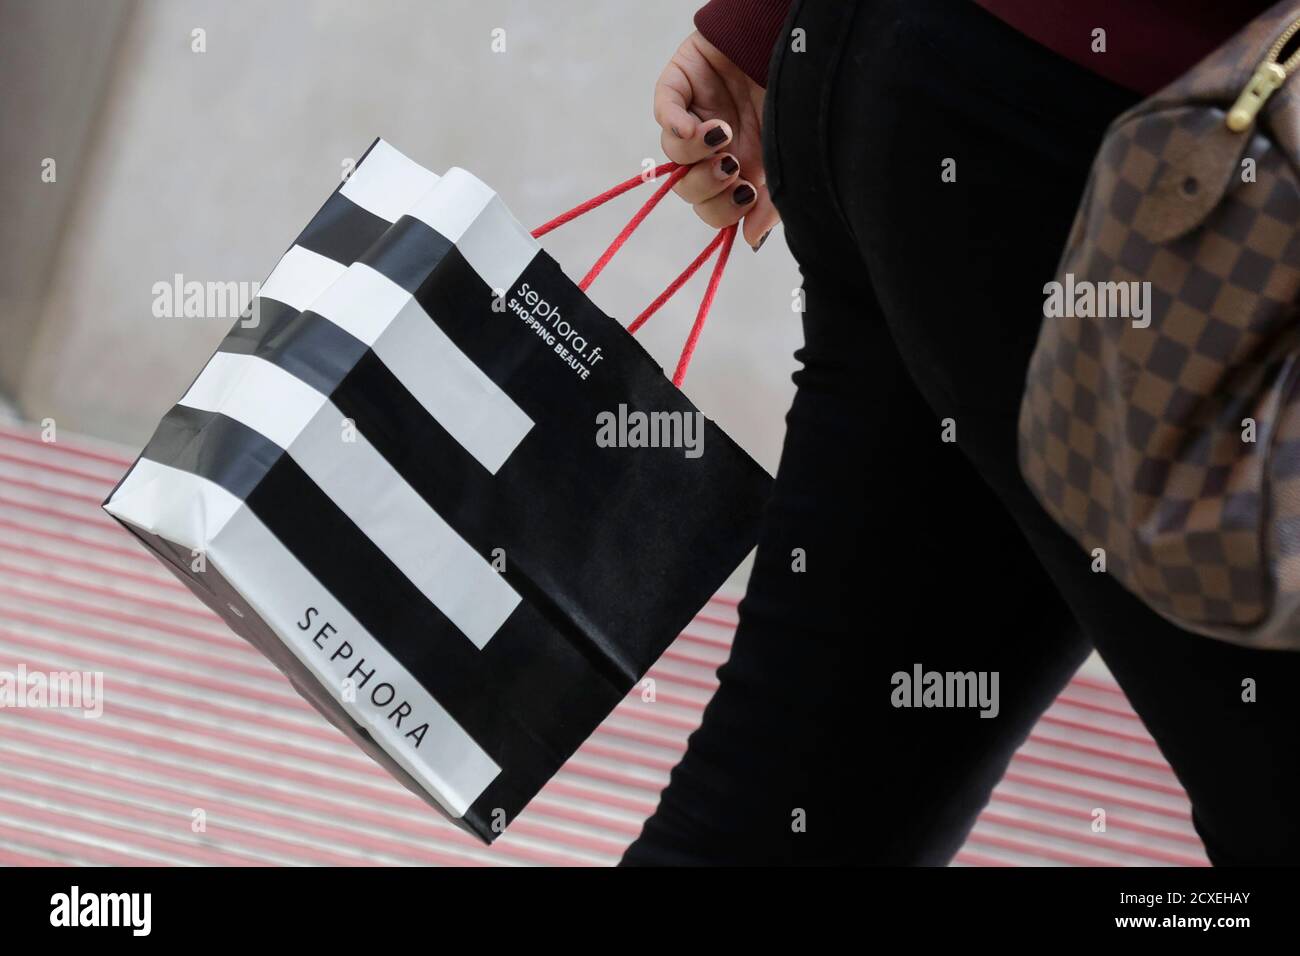 Una donna cammina con una borsa per la spesa Sephora mentre lascia un  negozio Sephora a Parigi il 23 luglio 2014. Sephora, il top seller di Dior  Lip Gloss e Lancome faccia